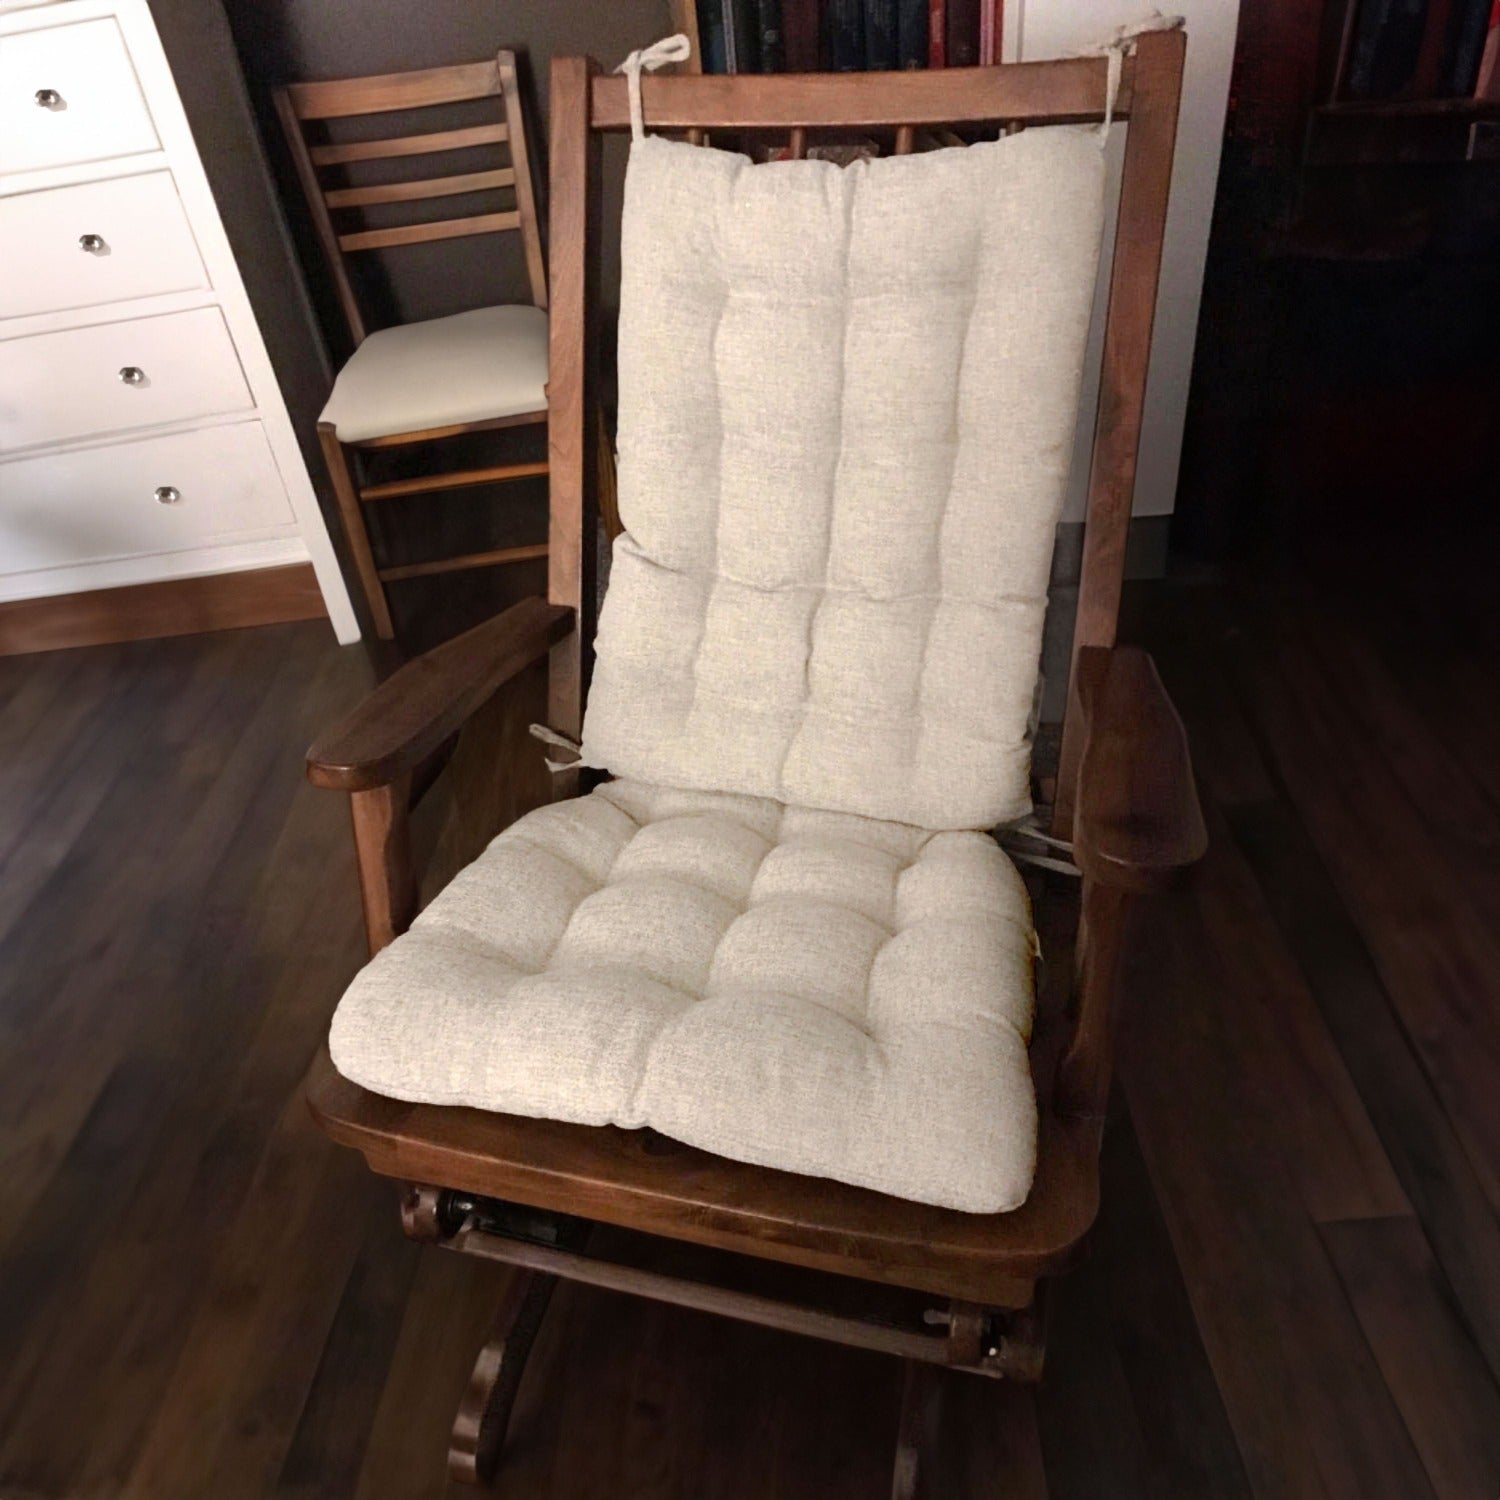 Never-Flatten Tufted Rocker Chair Cushion Set, In 2 Sizes  Outdoor rocking chair  cushions, Rocking chair cushions, Rocking chair